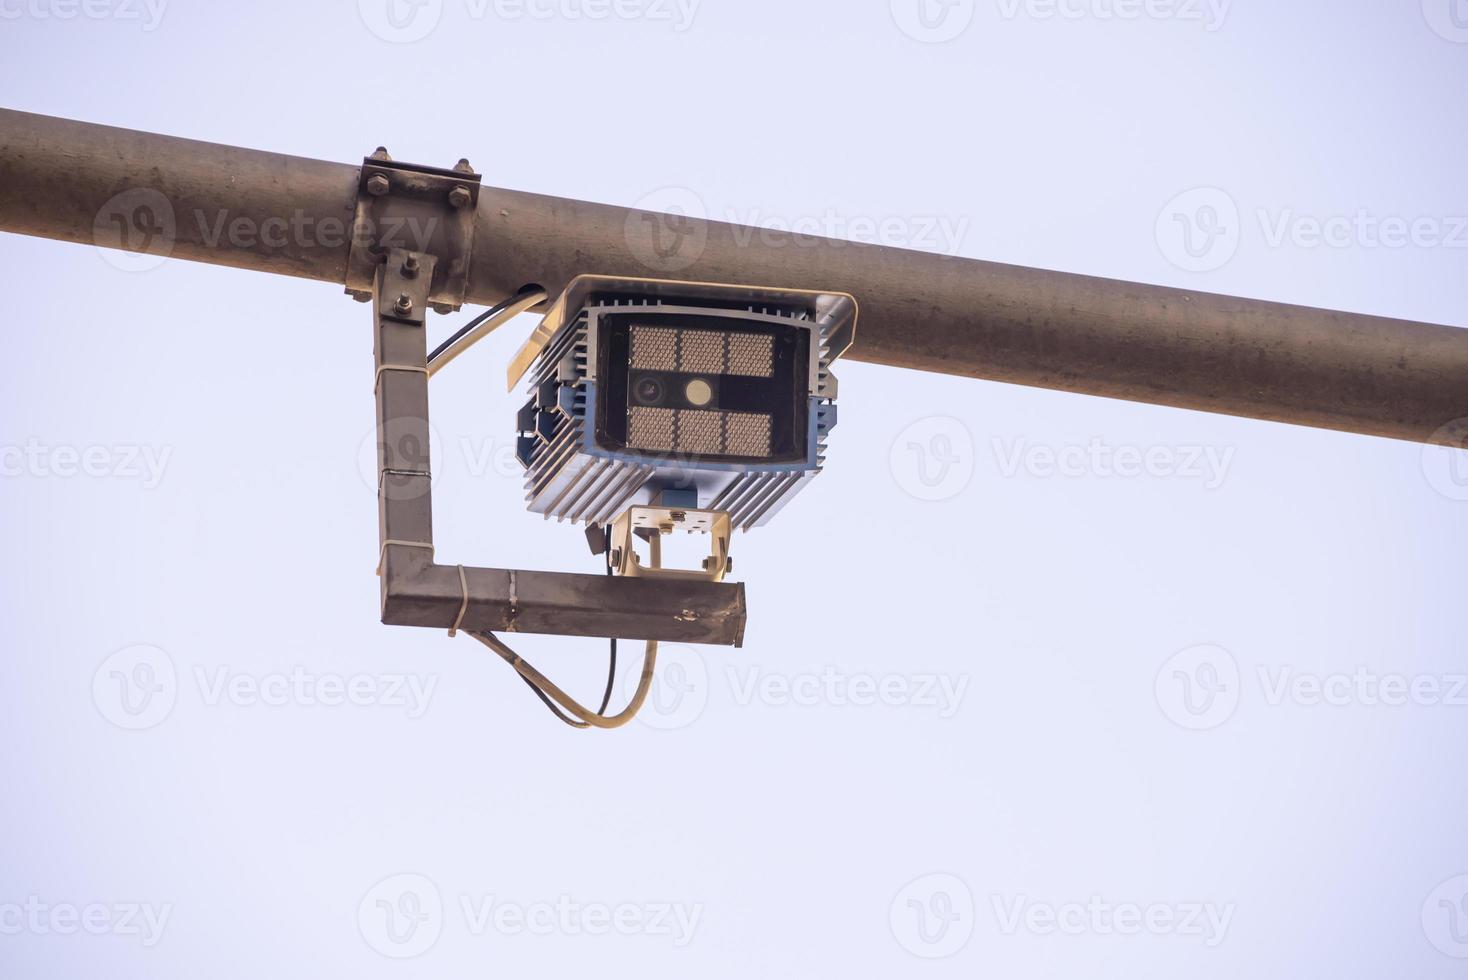 Kamera für elektronisches Tor in der Fußgängerzone platziert foto